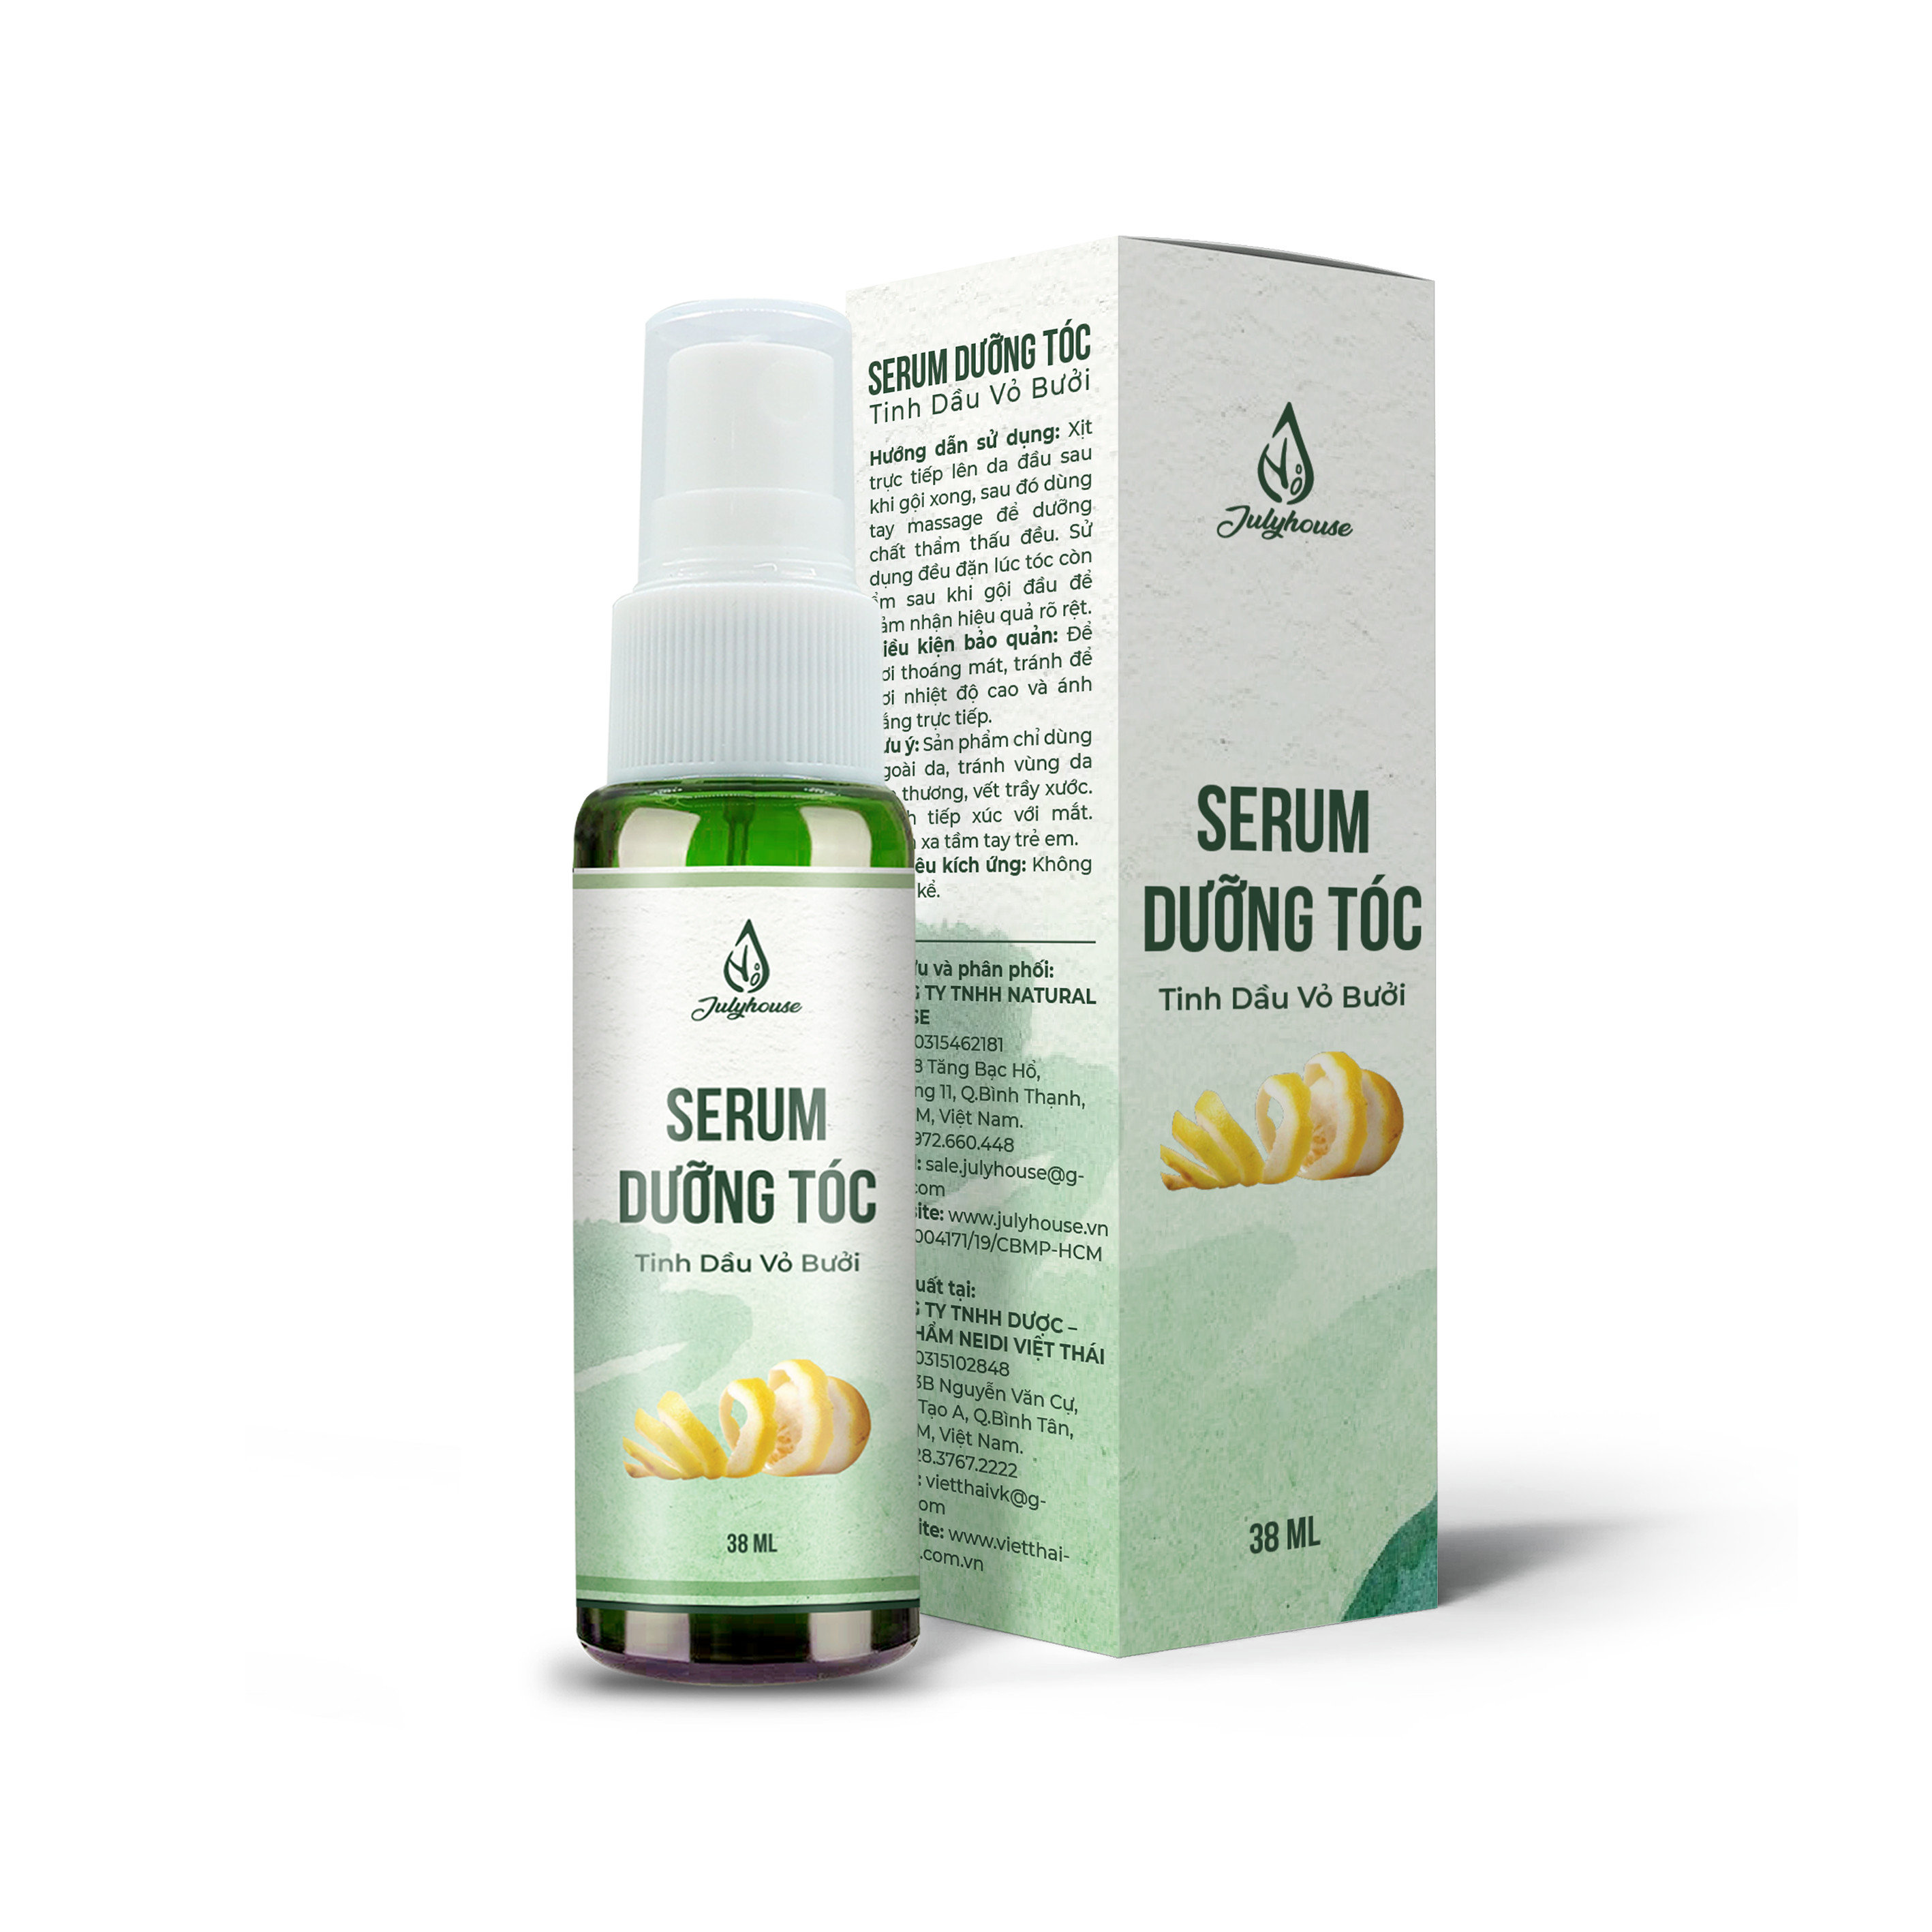 Serum dưỡng tóc tinh dầu Vỏ Bưởi 38ml JULYHOUSE giúp mái tóc khoẻ bồng bềnh, phục hồi tóc hư tổn, hương thơm thư giãn an toàn